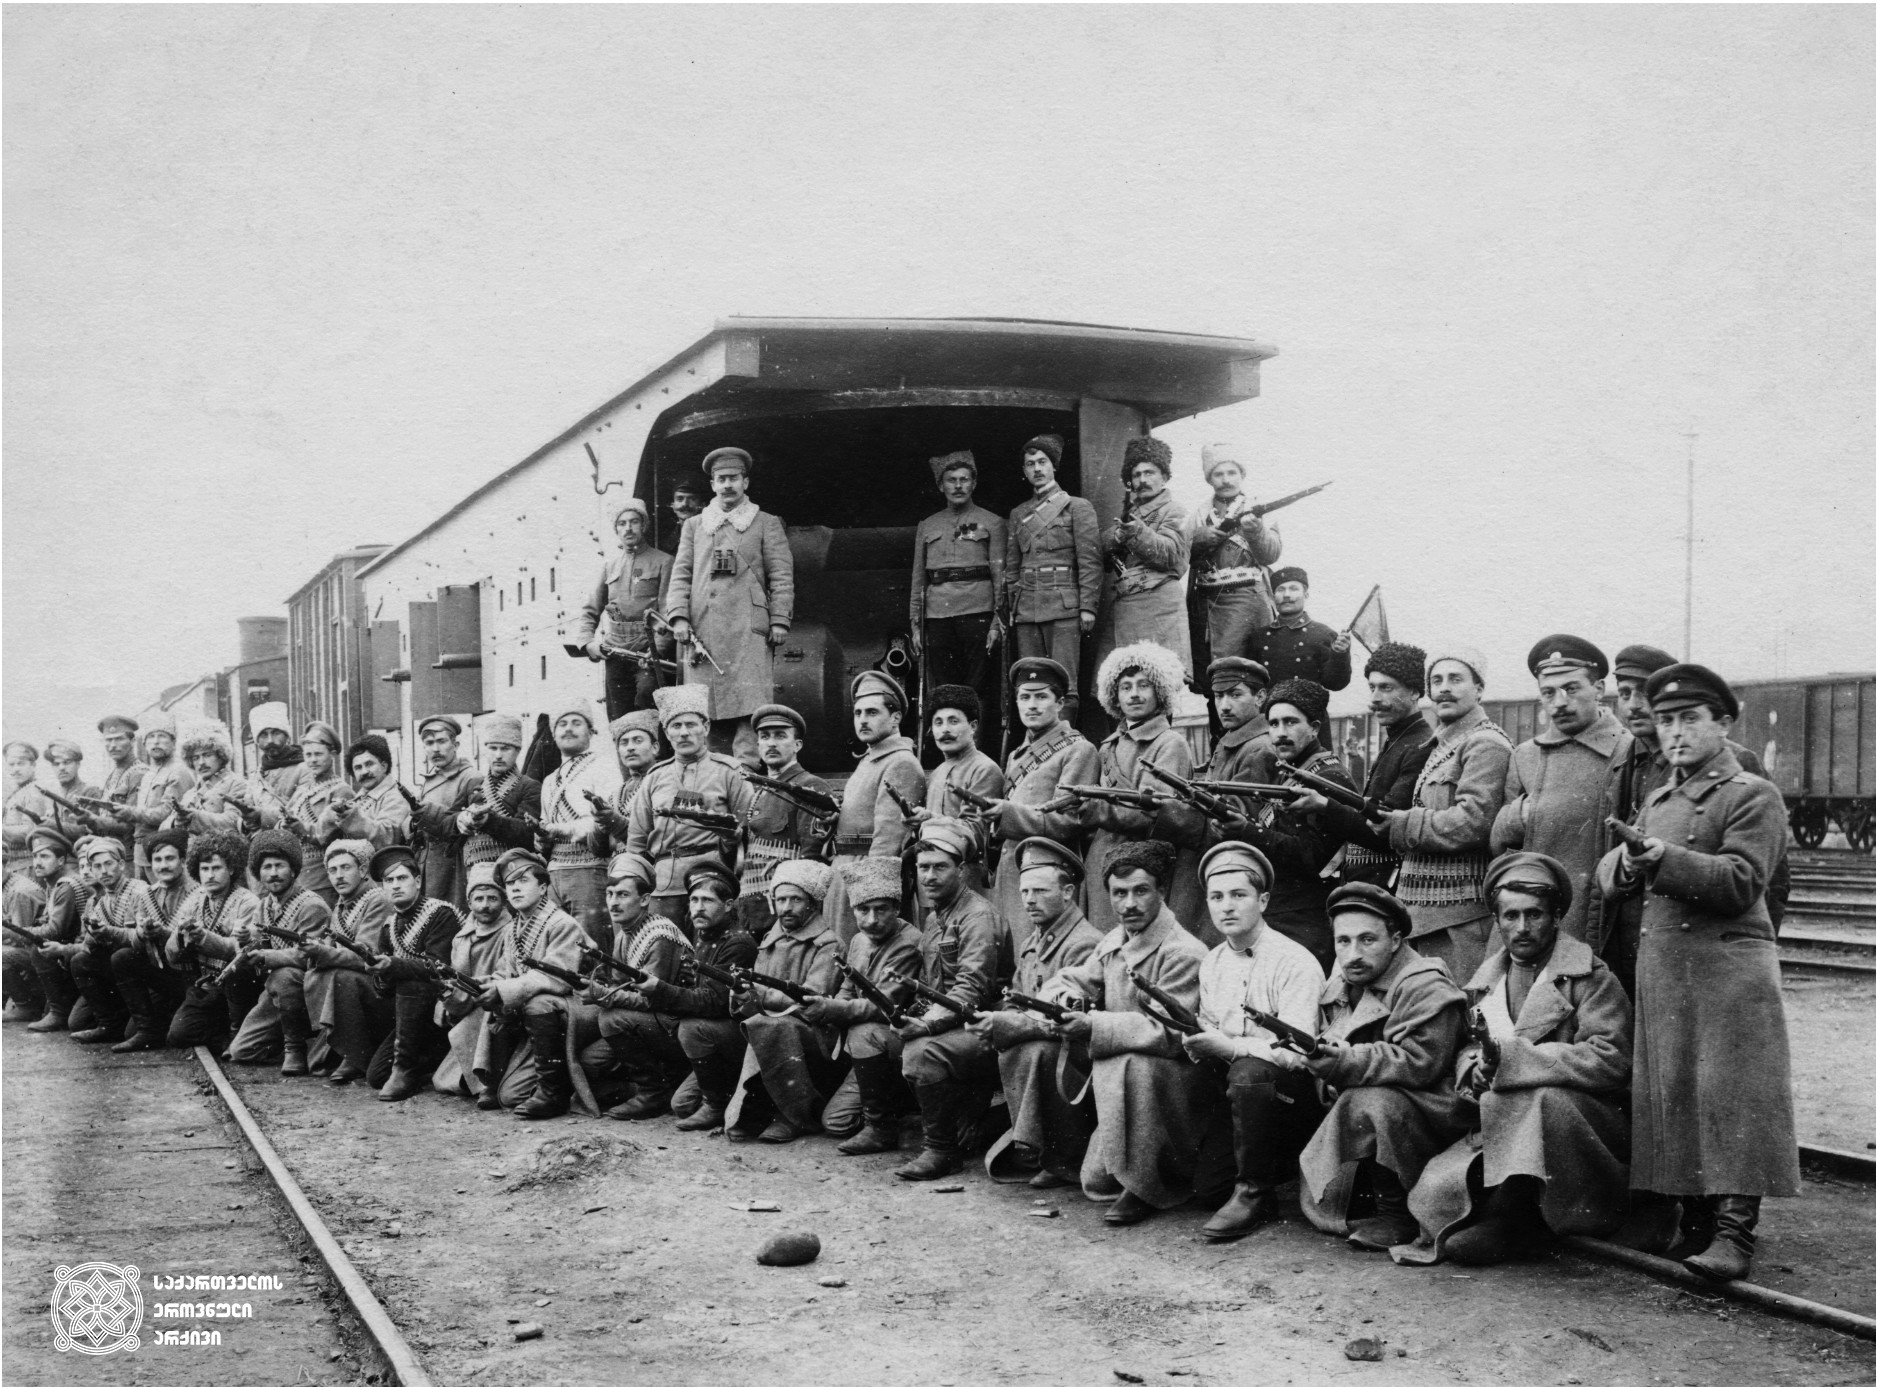 სახალხო გვარდიის ჯავშანმატარებელთა რაზმის წევრები, ჯავშანმატარებელი N1 „რესპუბლიკელის“ ფონზე. ზედა რიგში მაუზერით ხელში და ბინოკლით რაზმის მეთაური, ვლადიმერ გოგუაძე. 1918-1921 წლები
<br>
Members of the division of armored train, on the background of armored train N1 “Respublikeli”. In the upper row is commander of the division Valodia Goguadze. 1918-1921